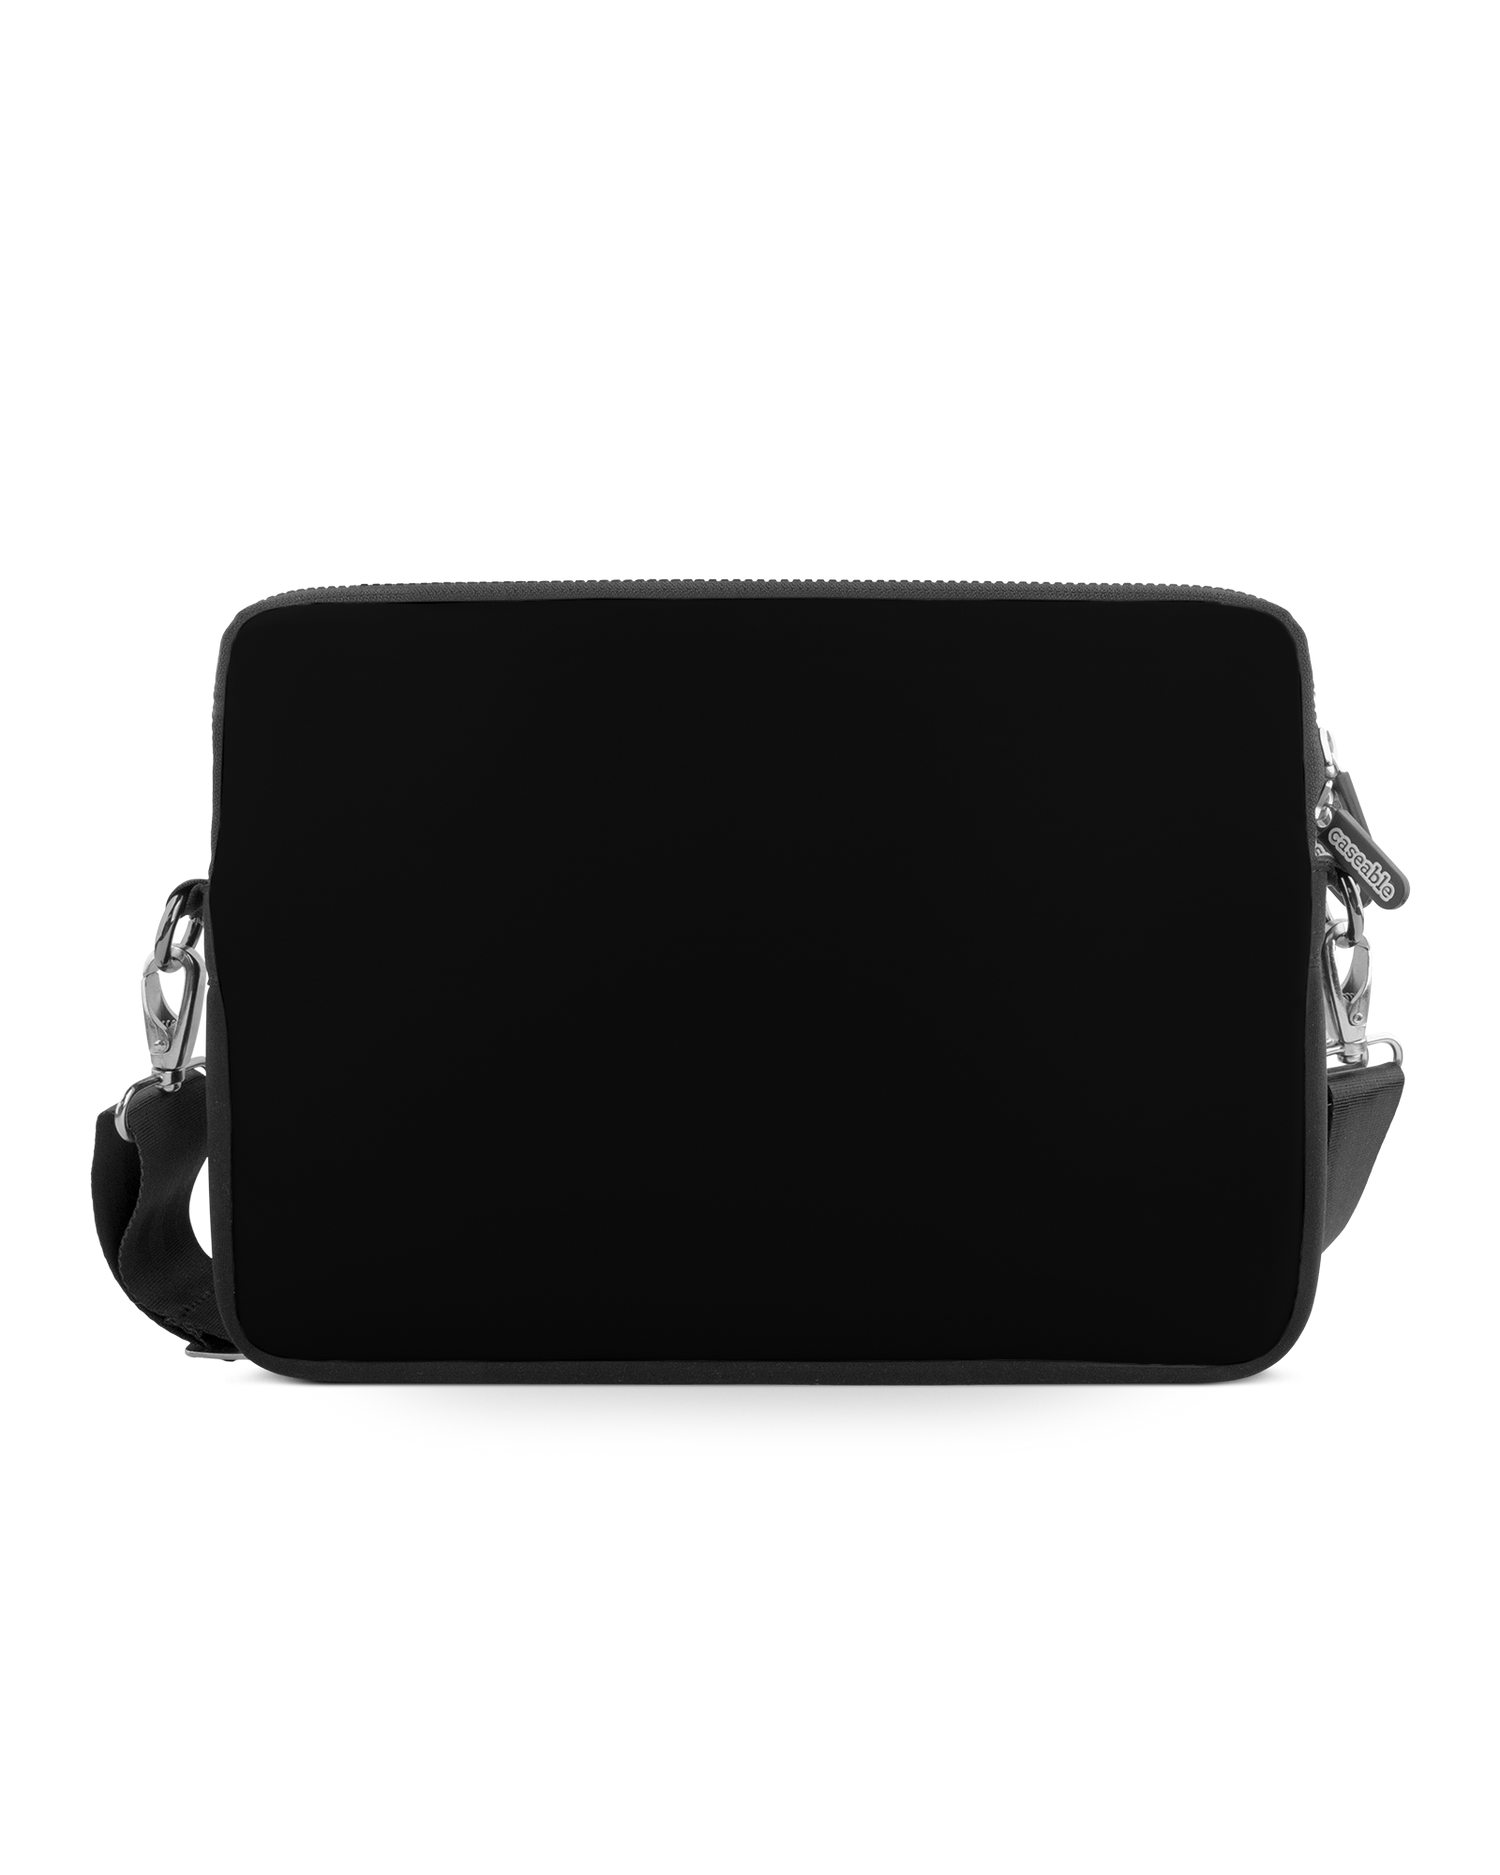 BLACK Premium Laptoptasche 13-14 Zoll: Vorderansicht